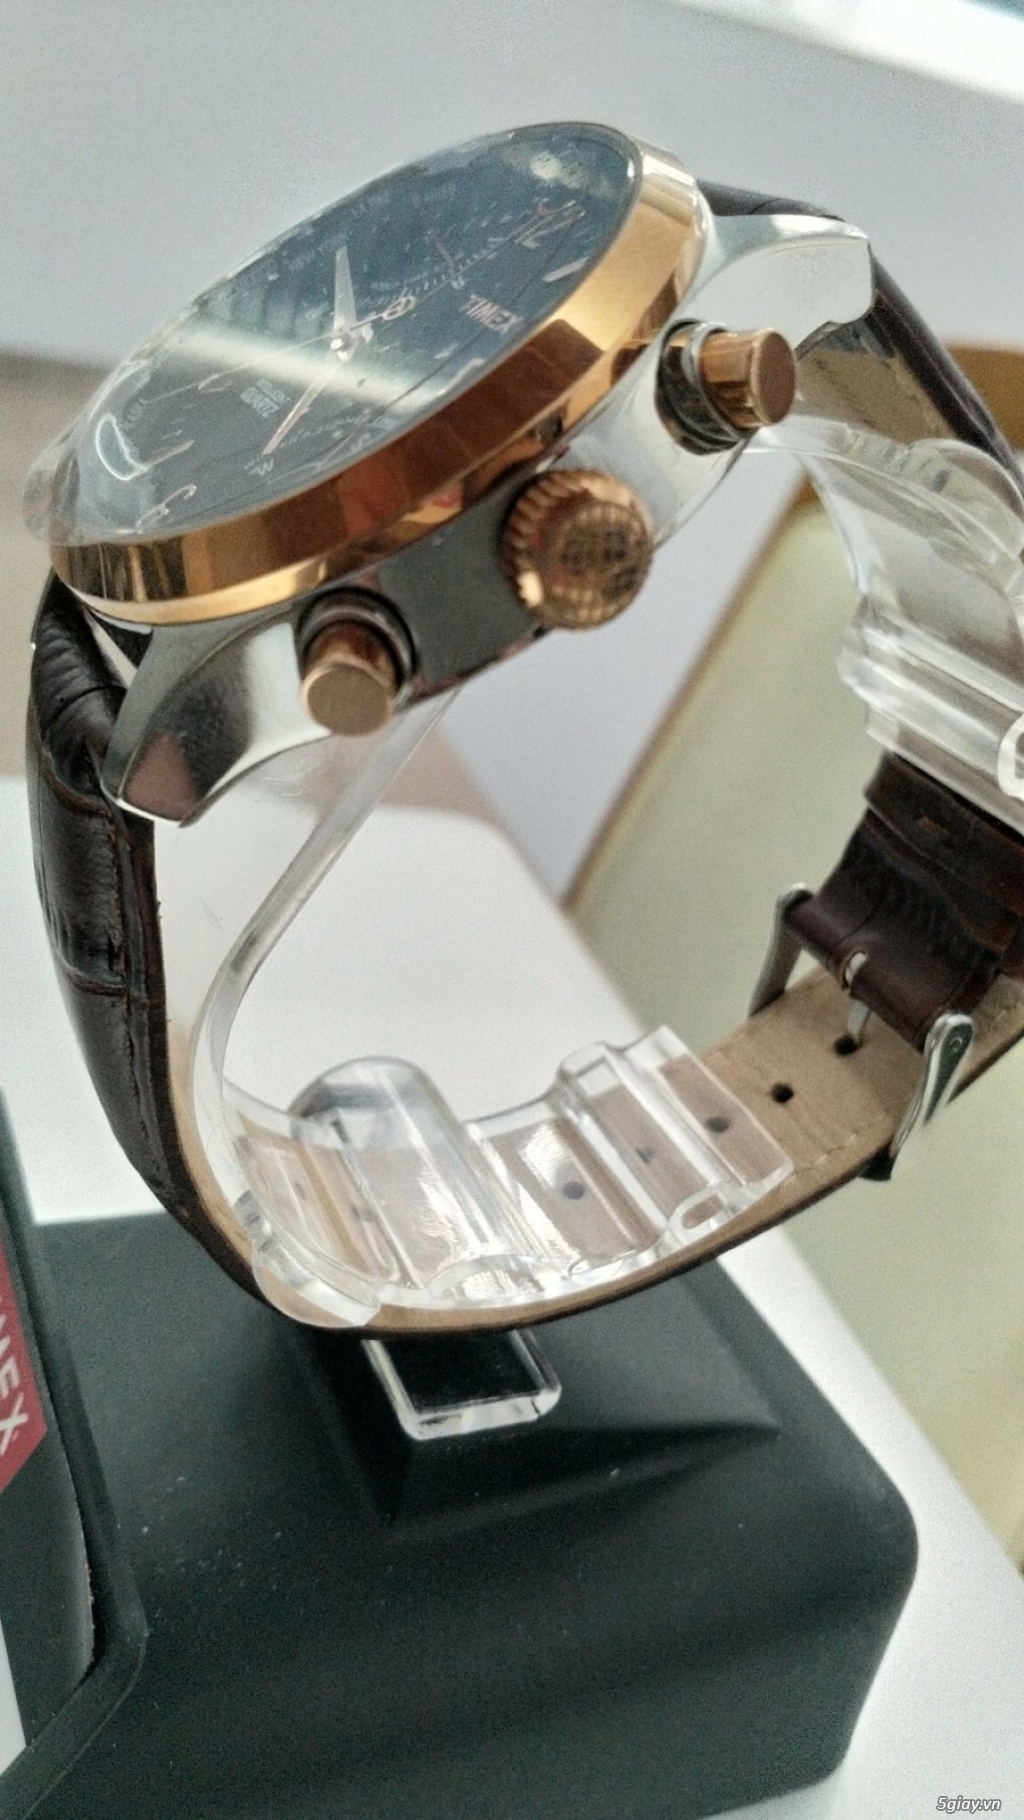 Đồng hồ nam hiệu Timex chính hãng xách tay từ Mỹ - 1